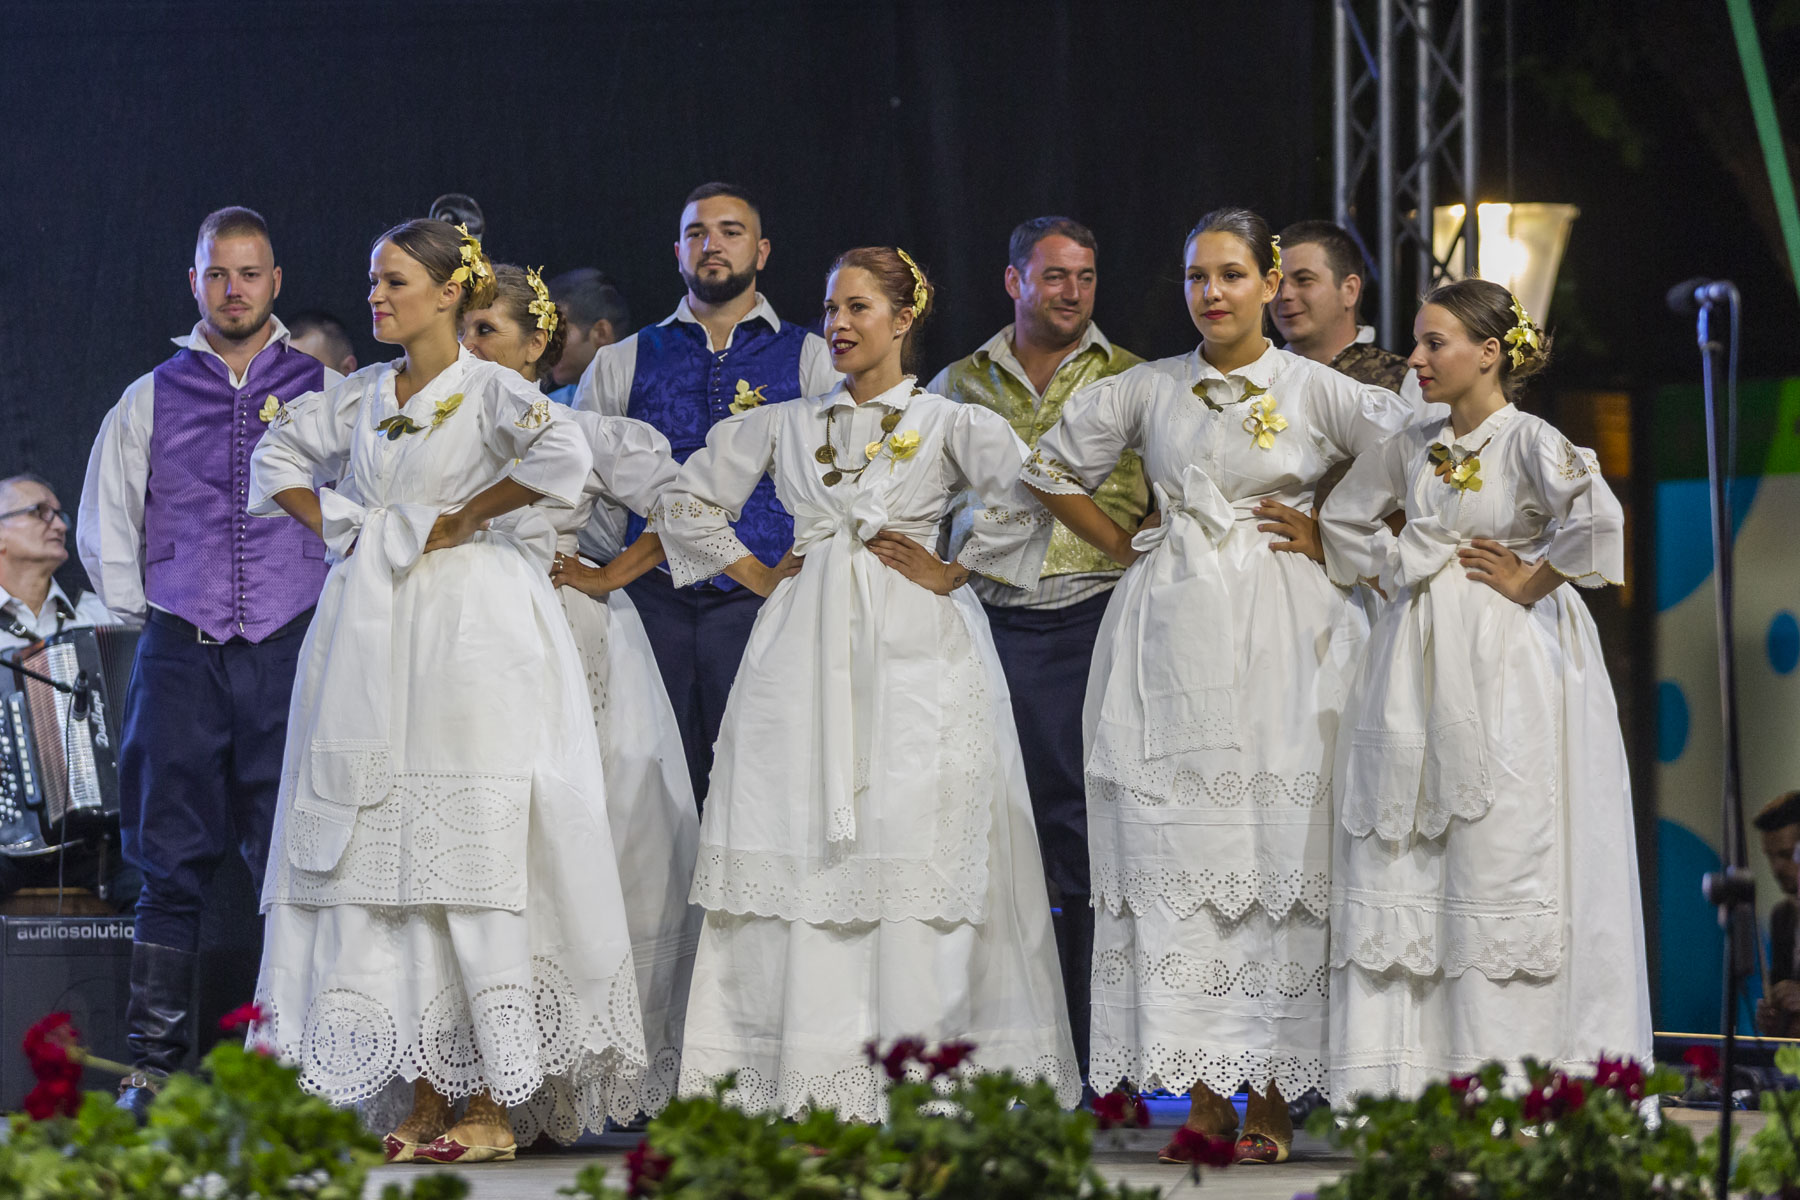 Subotica: Bunjevci obeležili nacionalni praznik  – „Dan Dužijance“